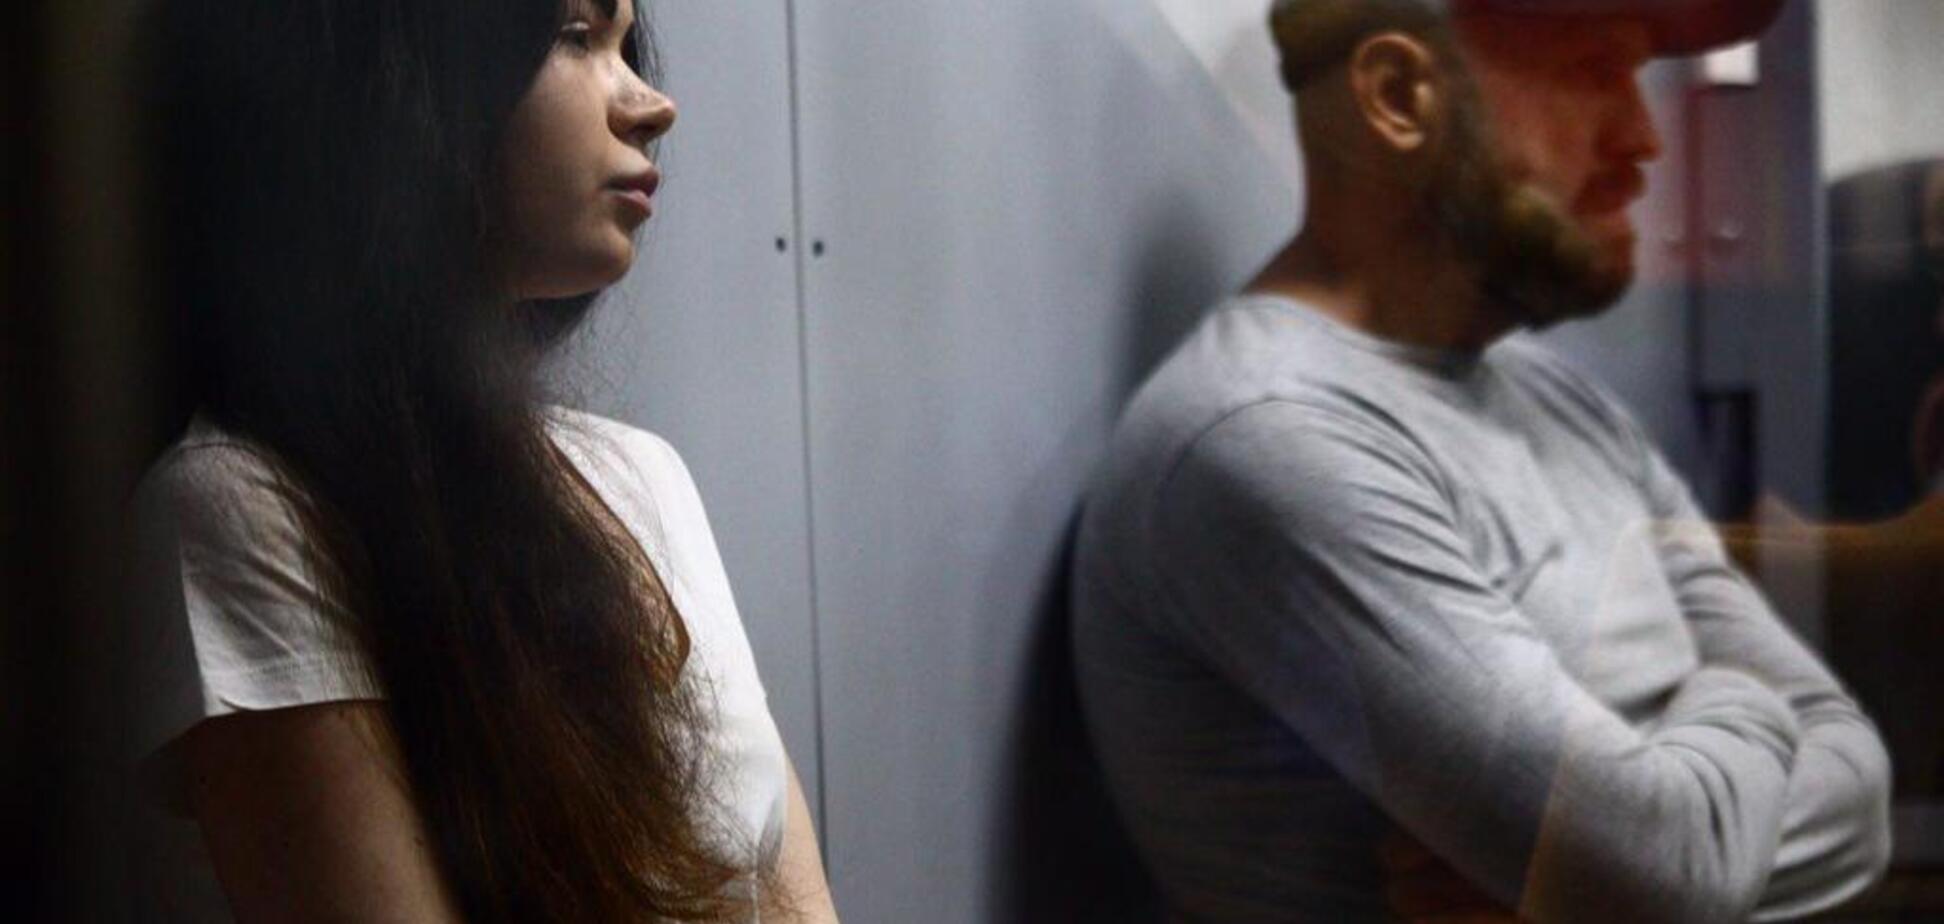 Зайцеву та Дронова залишили в СІЗО: адвокат заявила про тортури